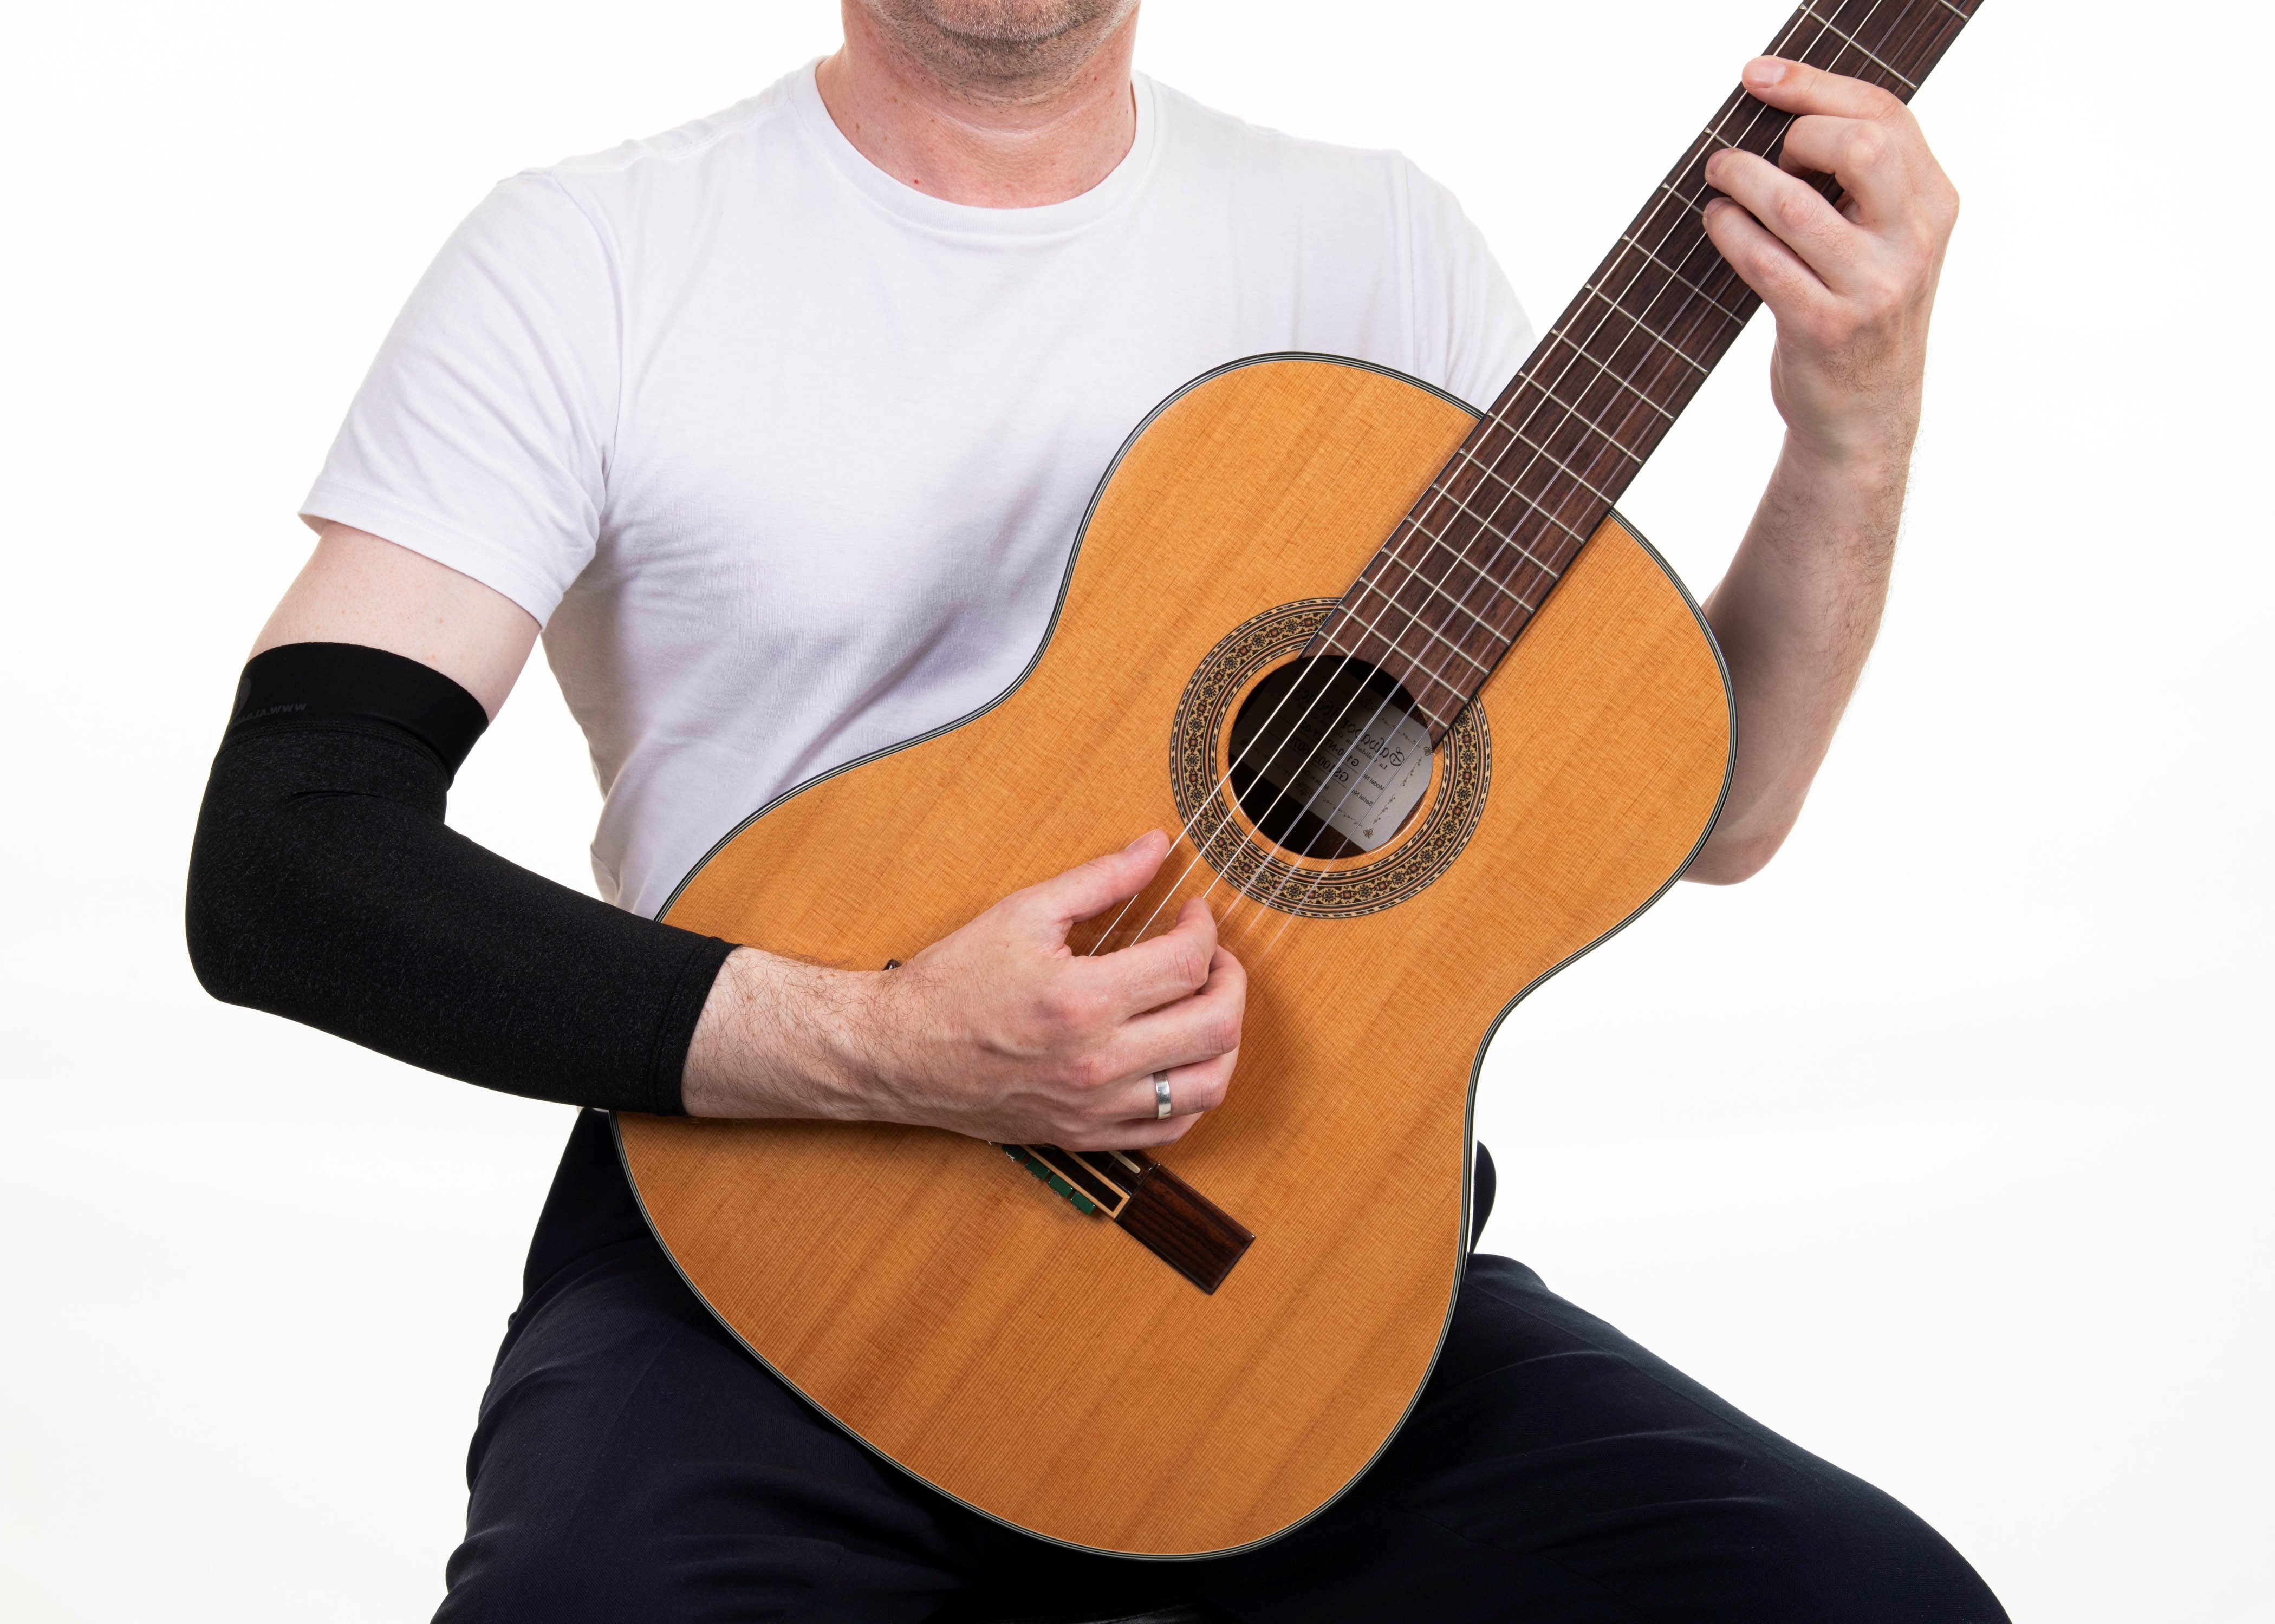 Alba Guitar Sleeves - Protección de brazo para tus guitarras clásicas y flamencas, acousticas y electricas